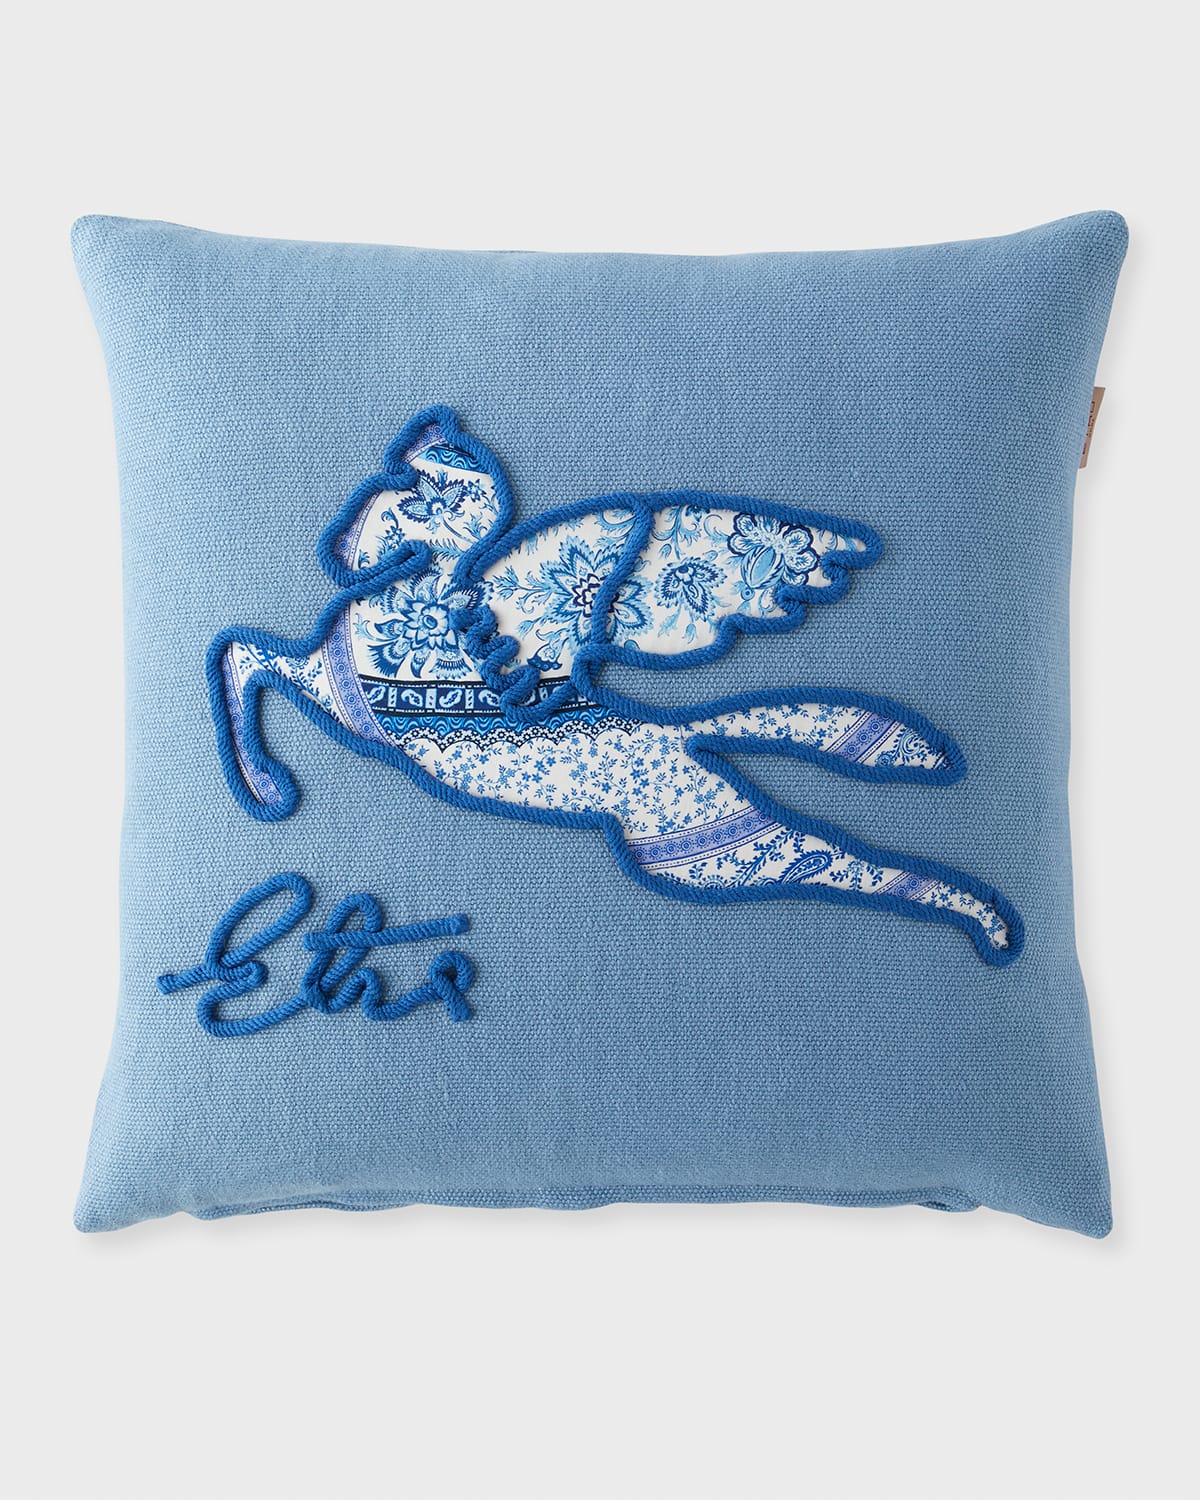 Etro Delhi Embroidered Pillow, 18" Square In Blue